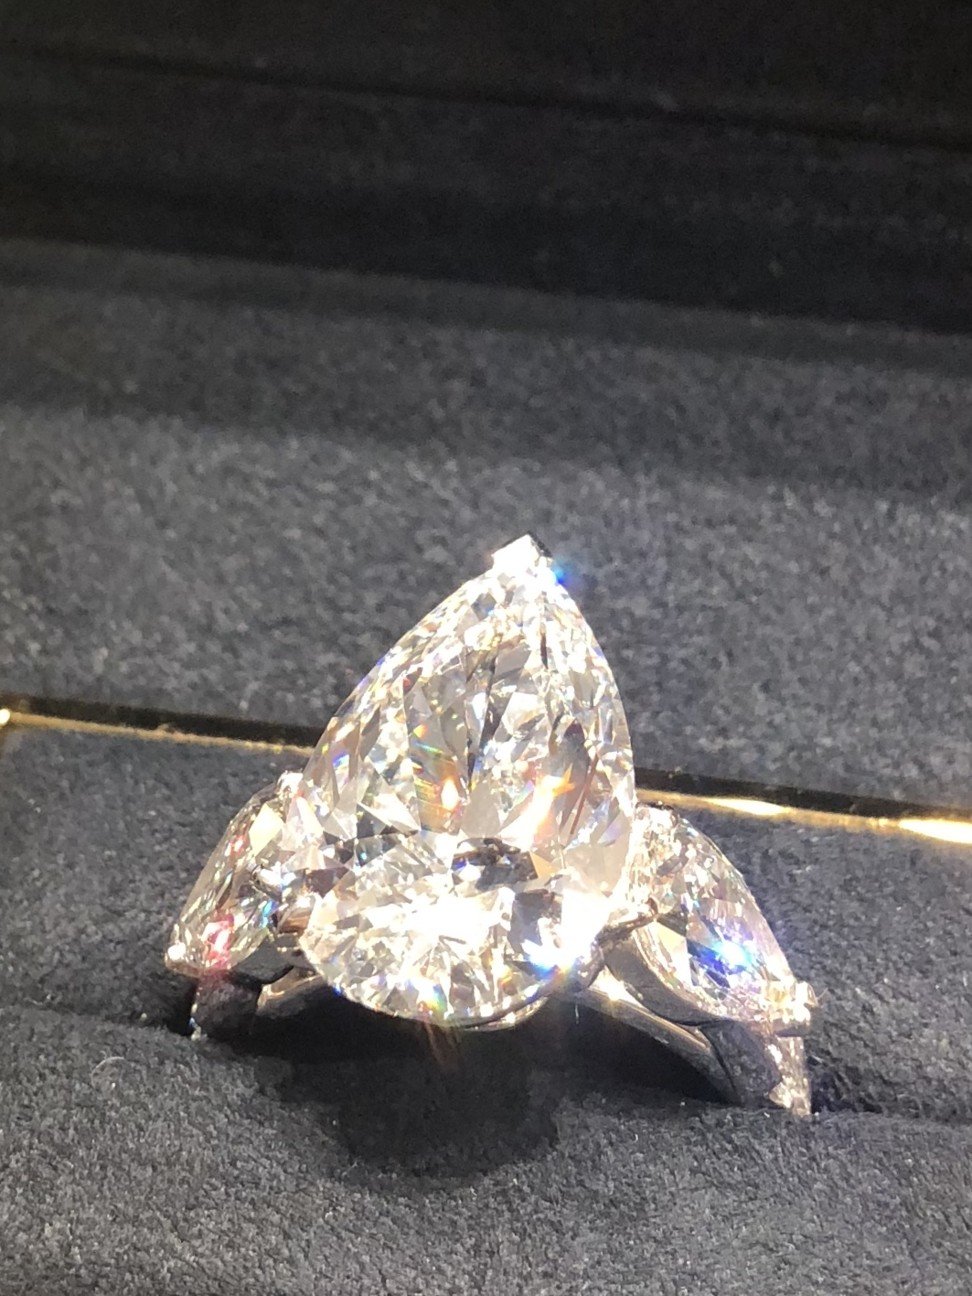 227 Carat Rough Diamond Found – Unforgettable Jewelry